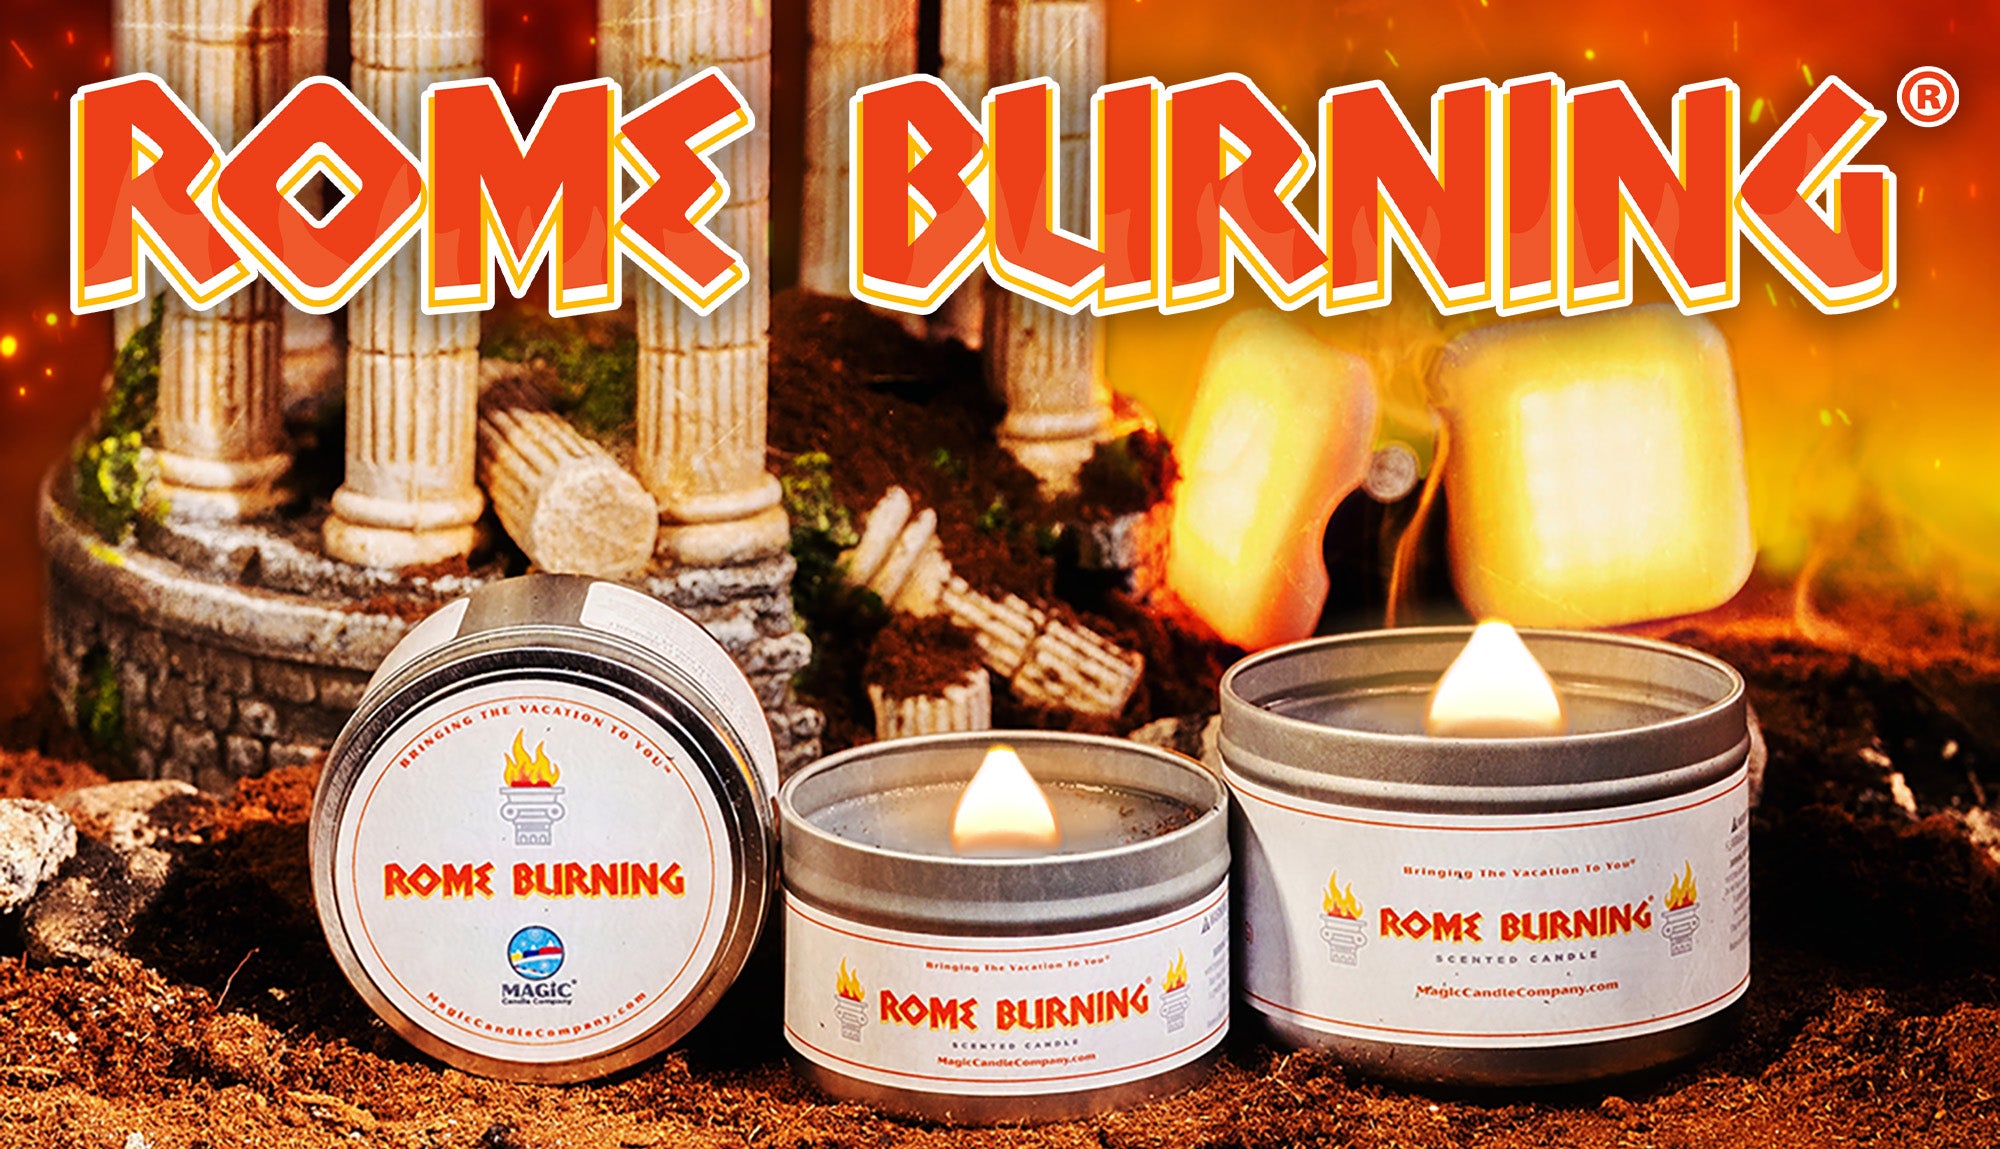 Rome Burning fragrance